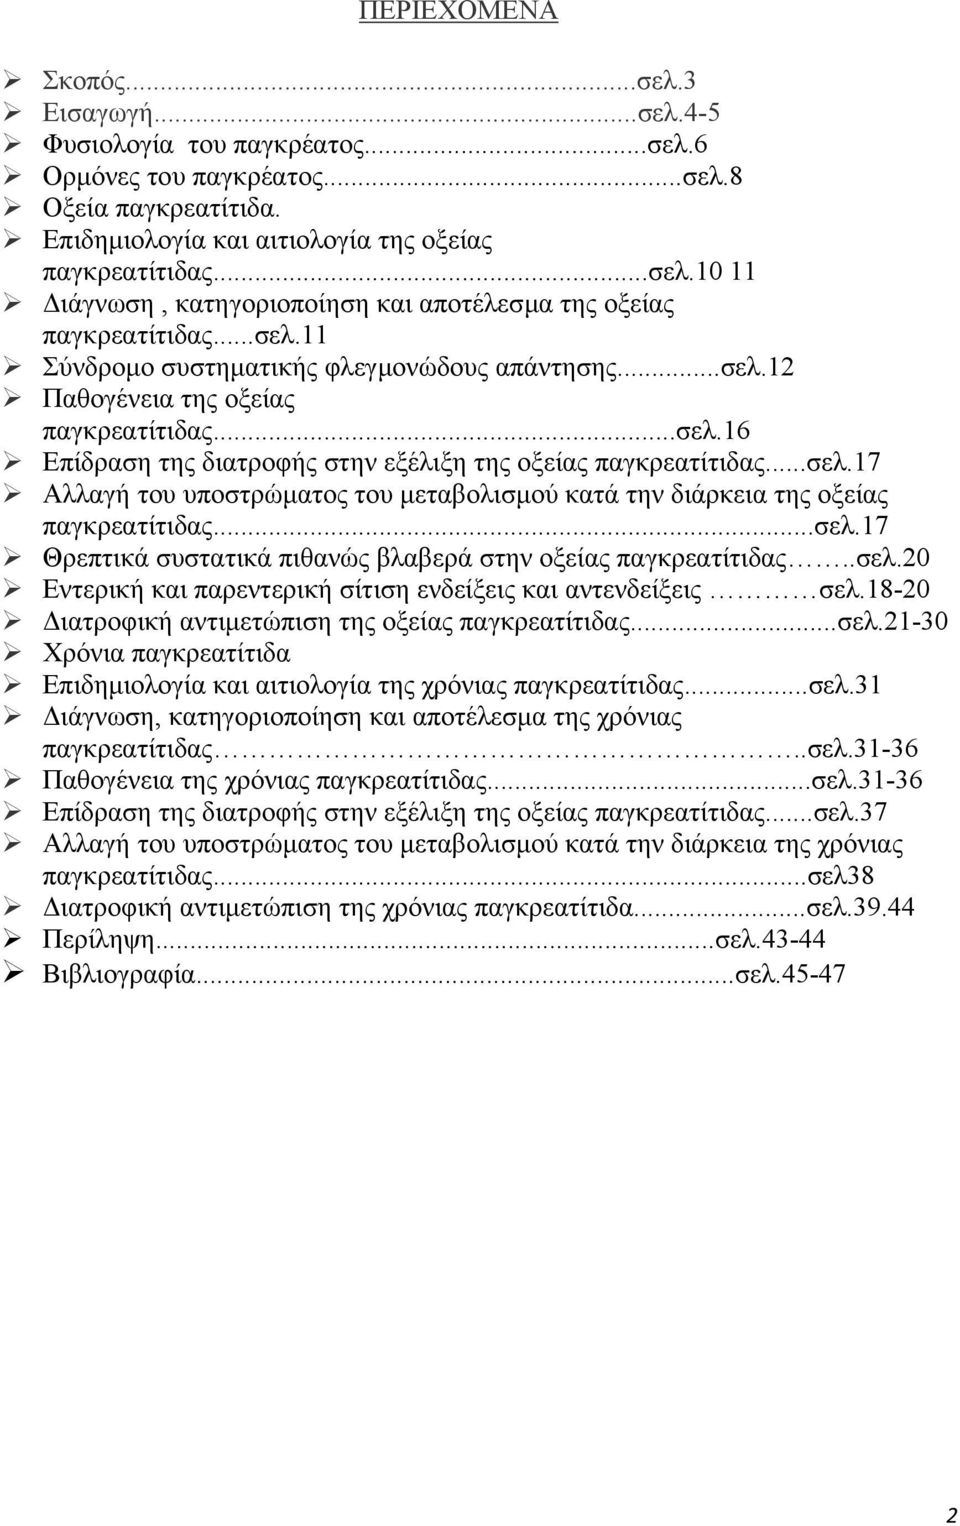 ..σελ.17 Θρεπτικά συστατικά πιθανώς βλαβερά στην οξείας παγκρεατίτιδας..σελ.20 Εντερική και παρεντερική σίτιση ενδείξεις και αντενδείξεις σελ.18-20 ιατροφική αντιµετώπιση της οξείας παγκρεατίτιδας.